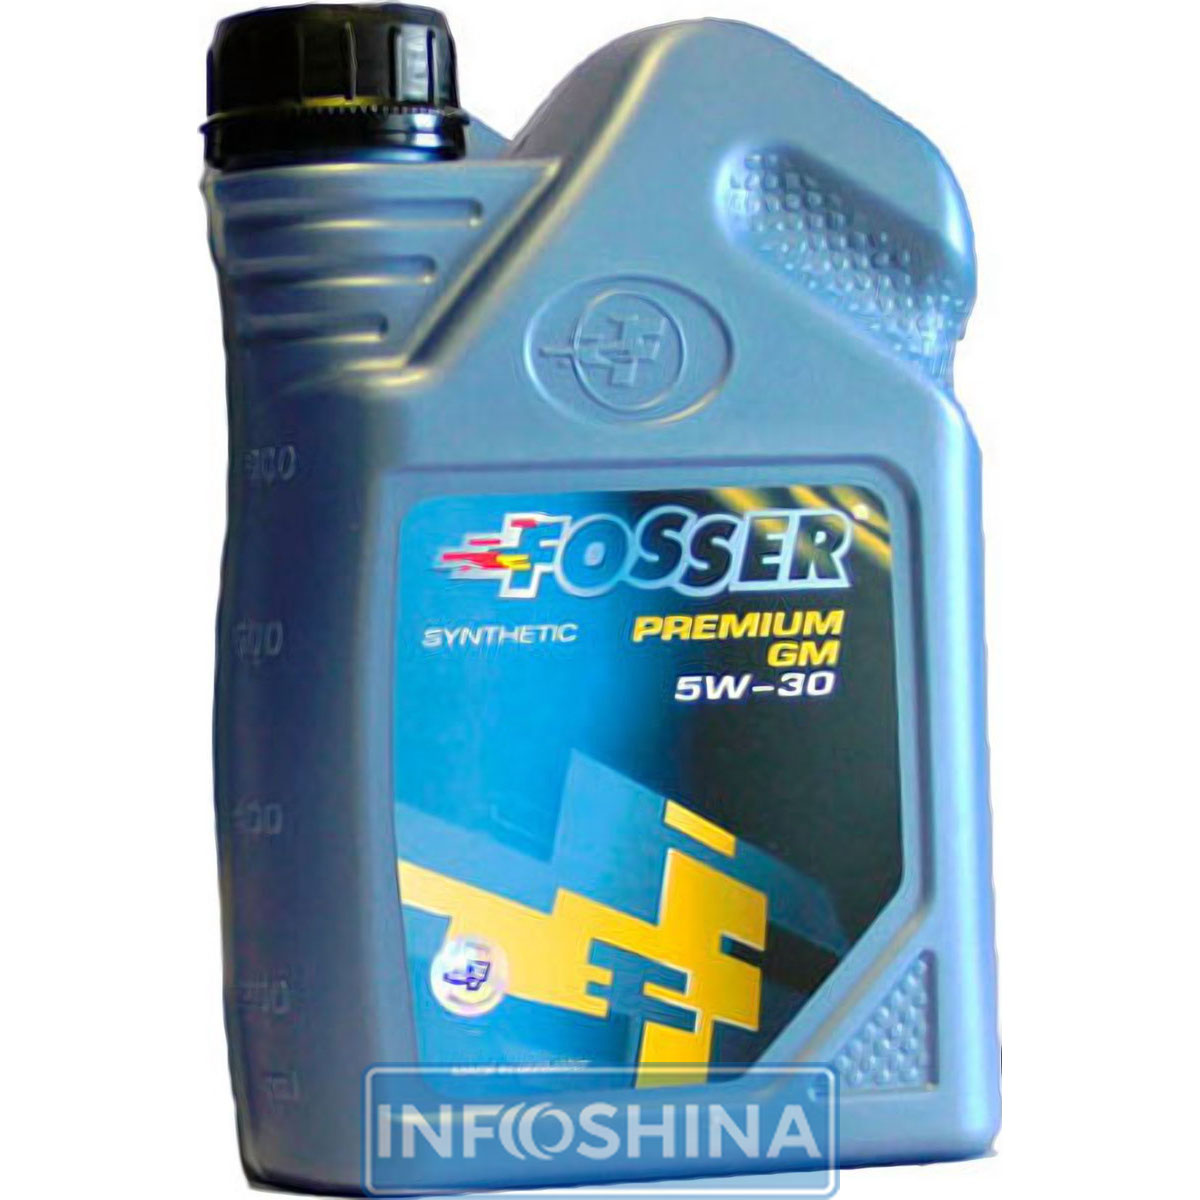 Fosser Premium GM 5W-30